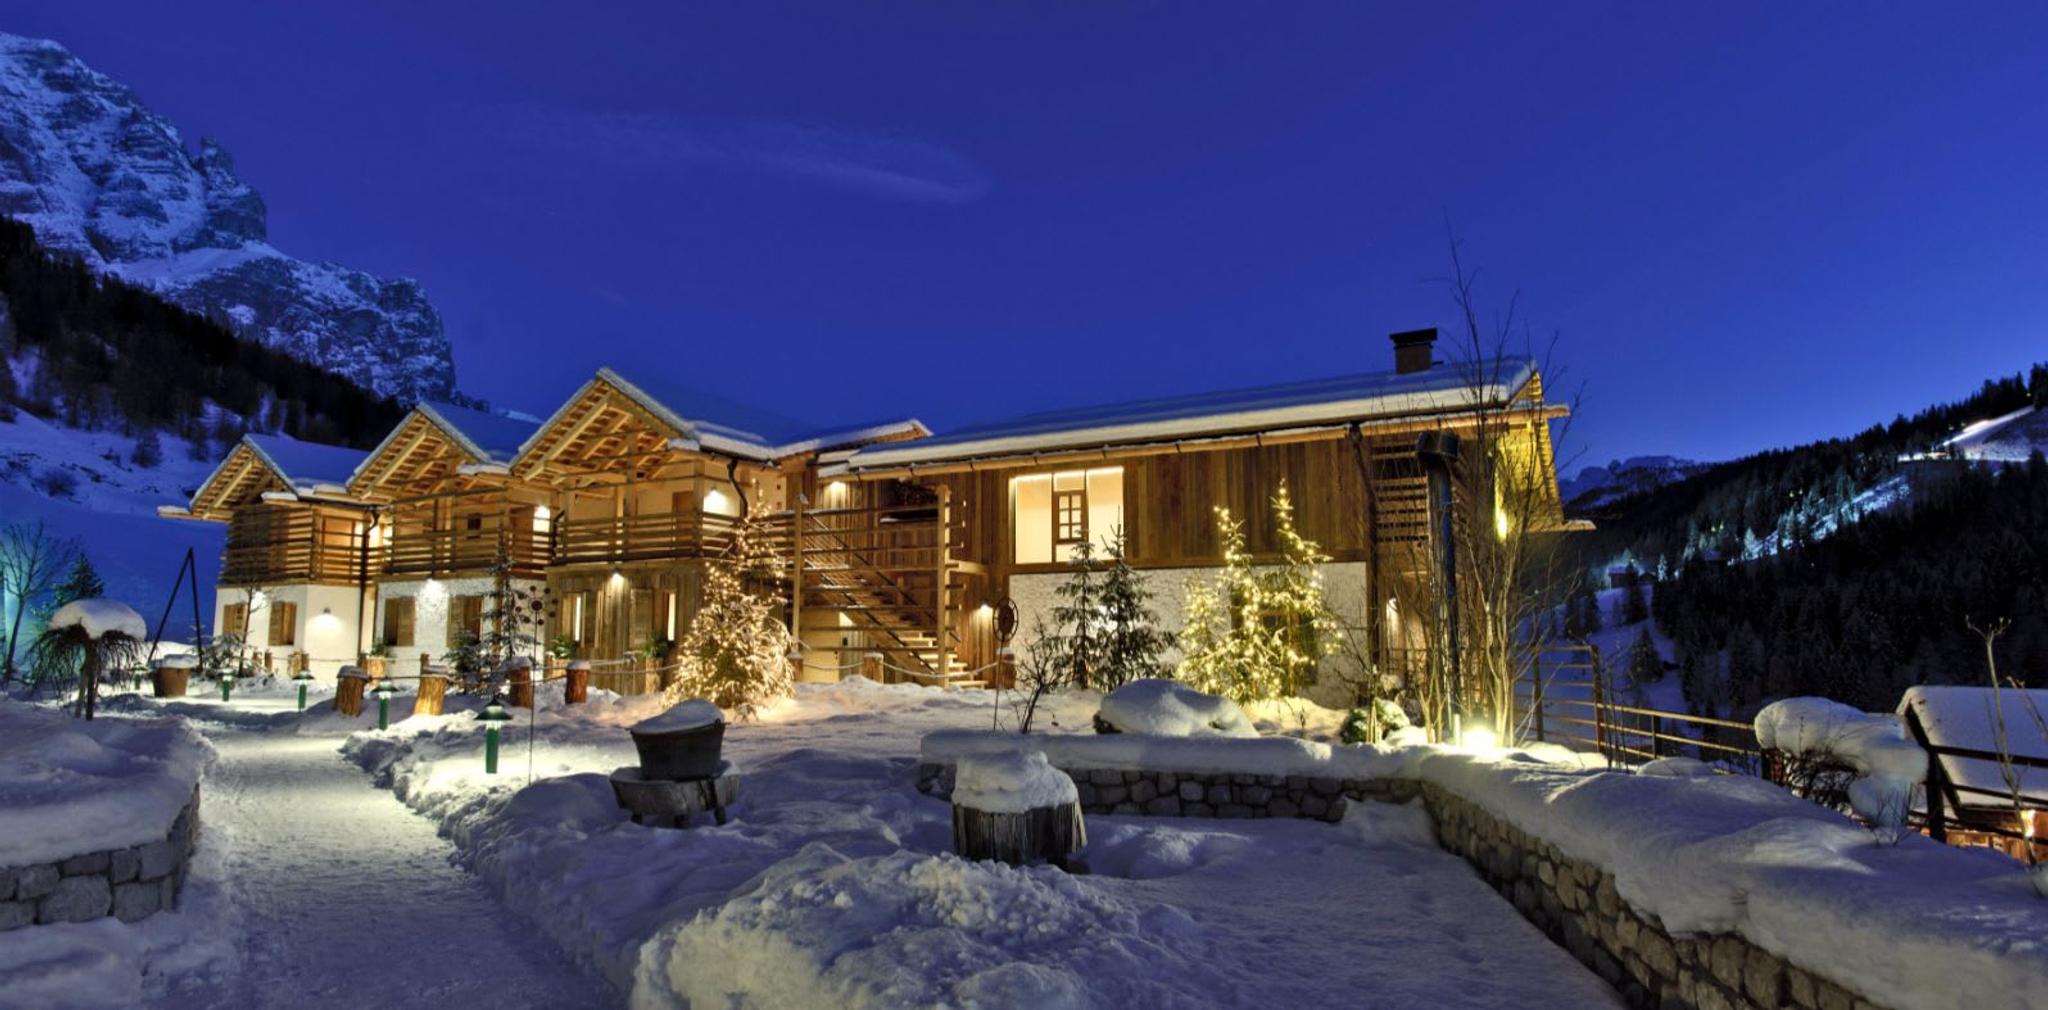 Vue romantique des cinq chalets de l'hôtel Fanes, recouverts d'une douce neige.